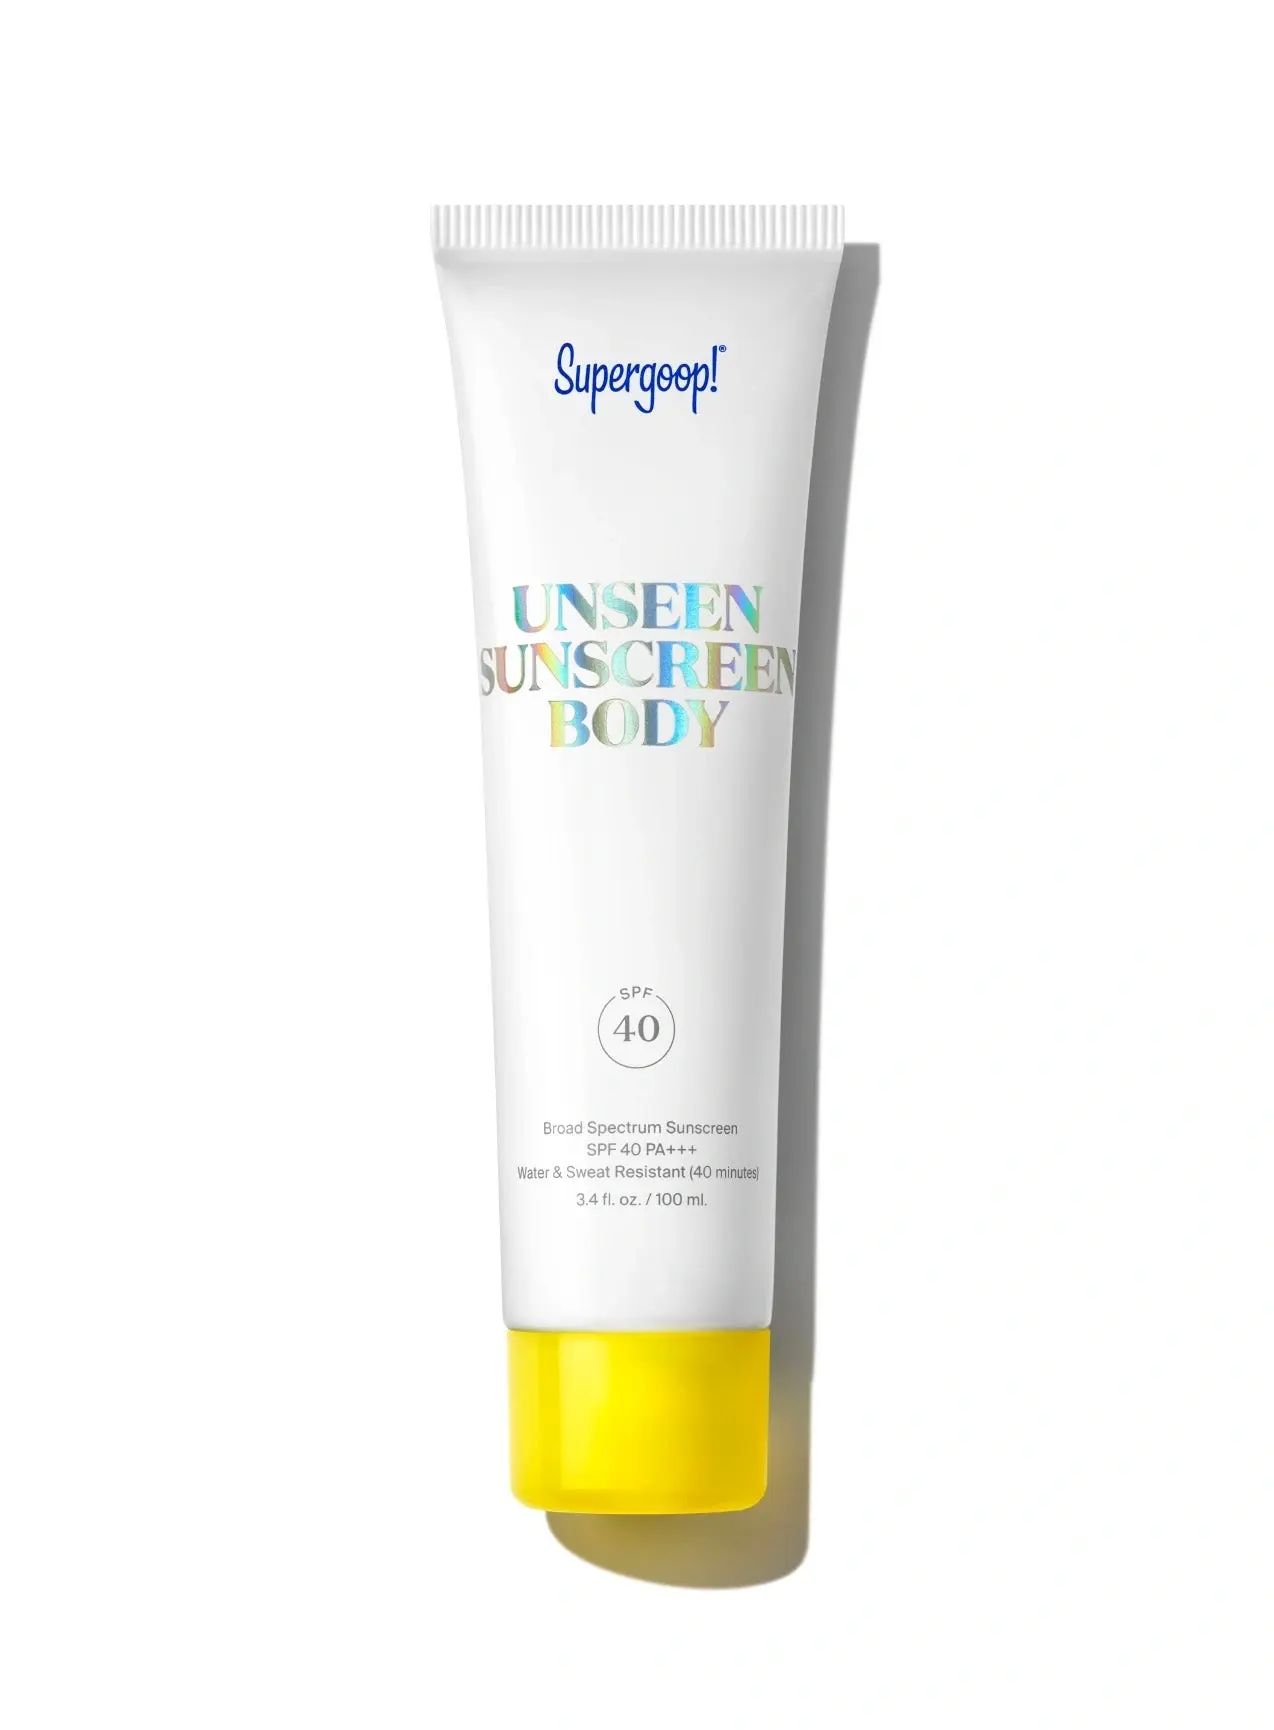 Unseen Sunscreen Body SPF 40 | Supergoop! | Supergoop